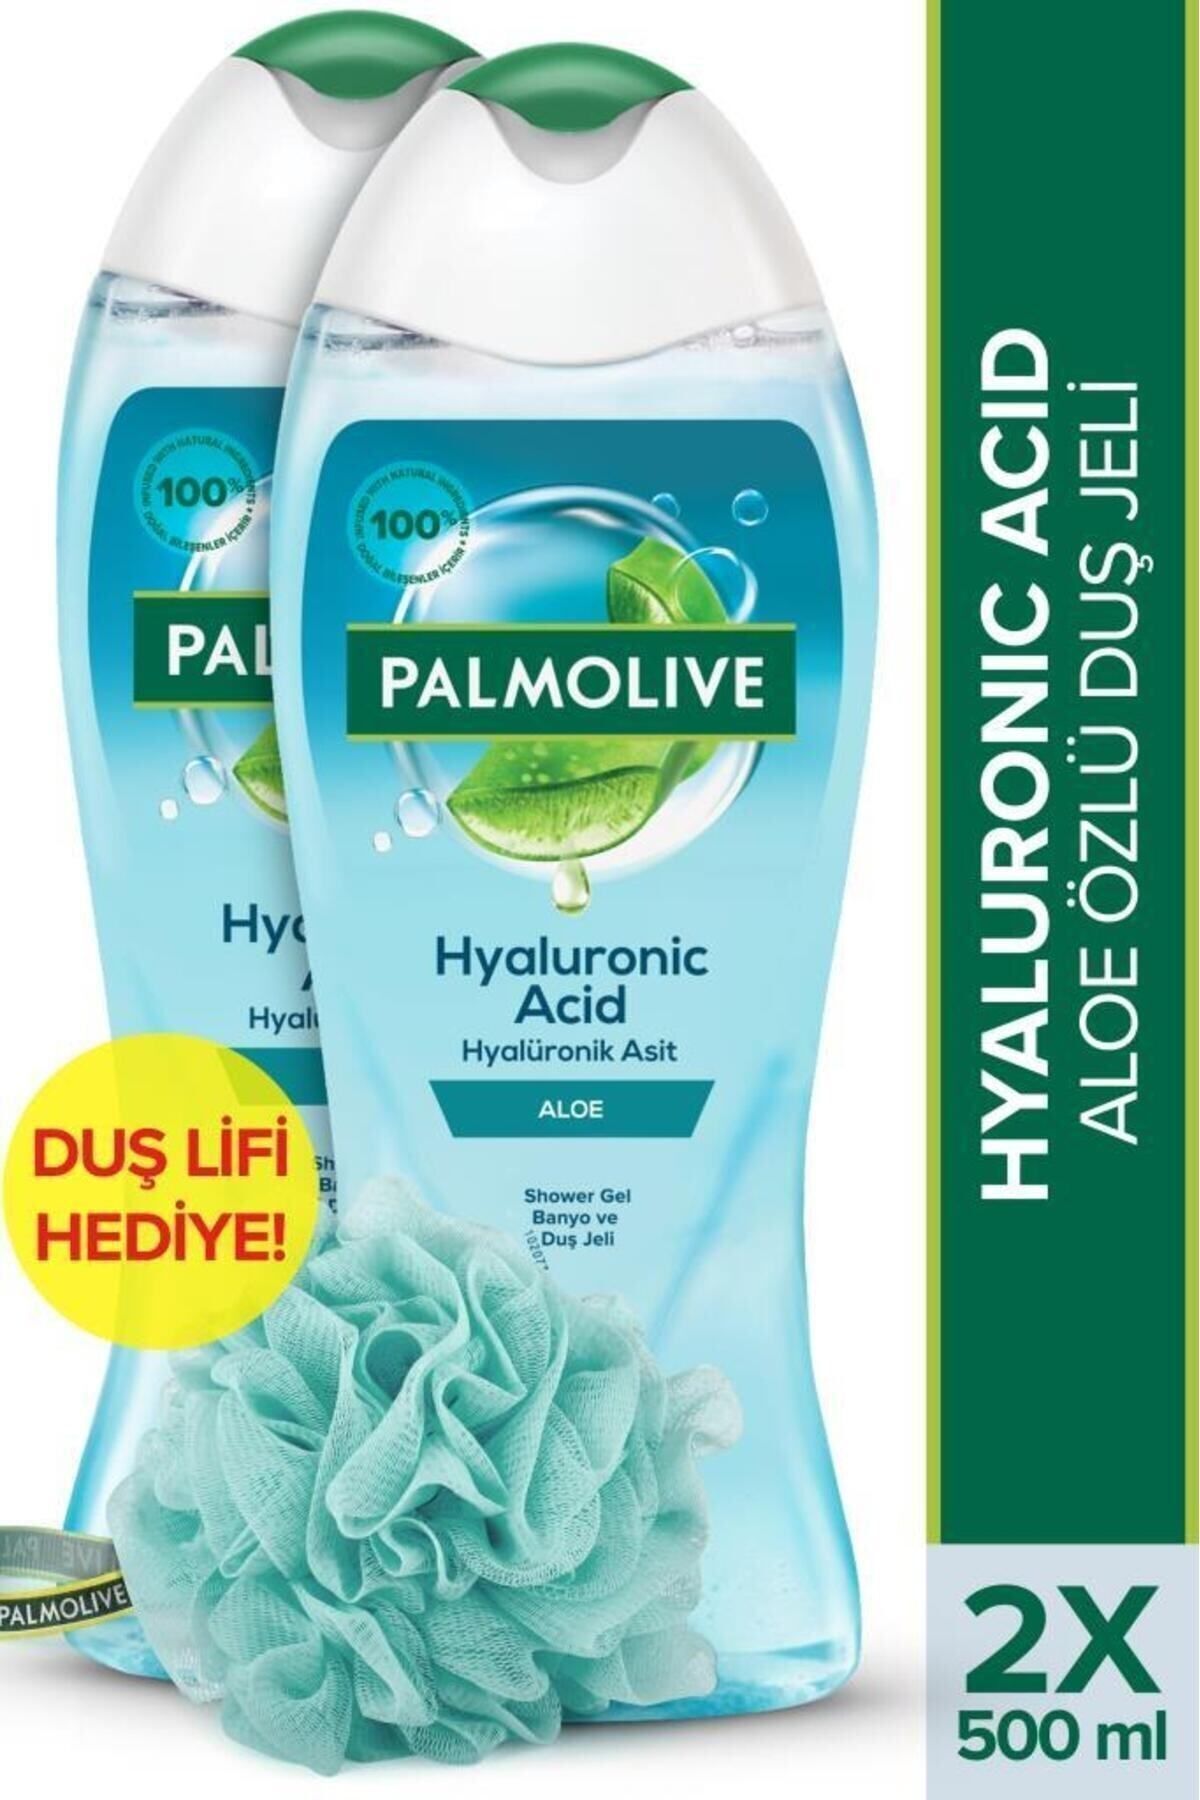 Palmolive Hyaluronic Acid Doğal Aloe Özlü Banyo ve Duş Jeli 500 ml x2 Adet + Duş Lifi Hediye